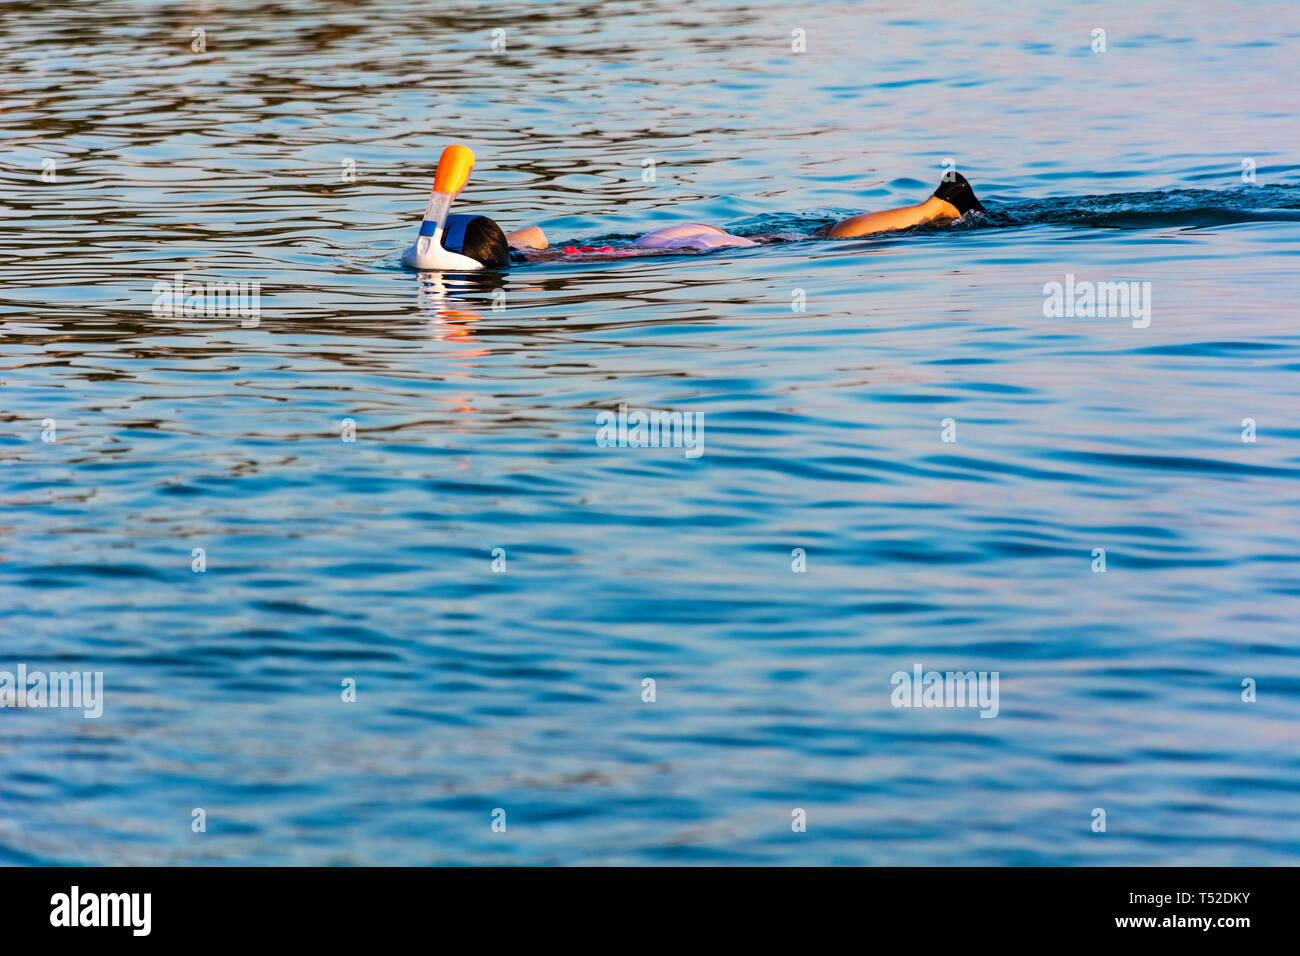 Person Schnorcheln auf ruhigem Wasser - Menschen tauchen in seichten Meer - Frau Schnorcheln Tauchen auf dem ruhigen Meer Stockfoto